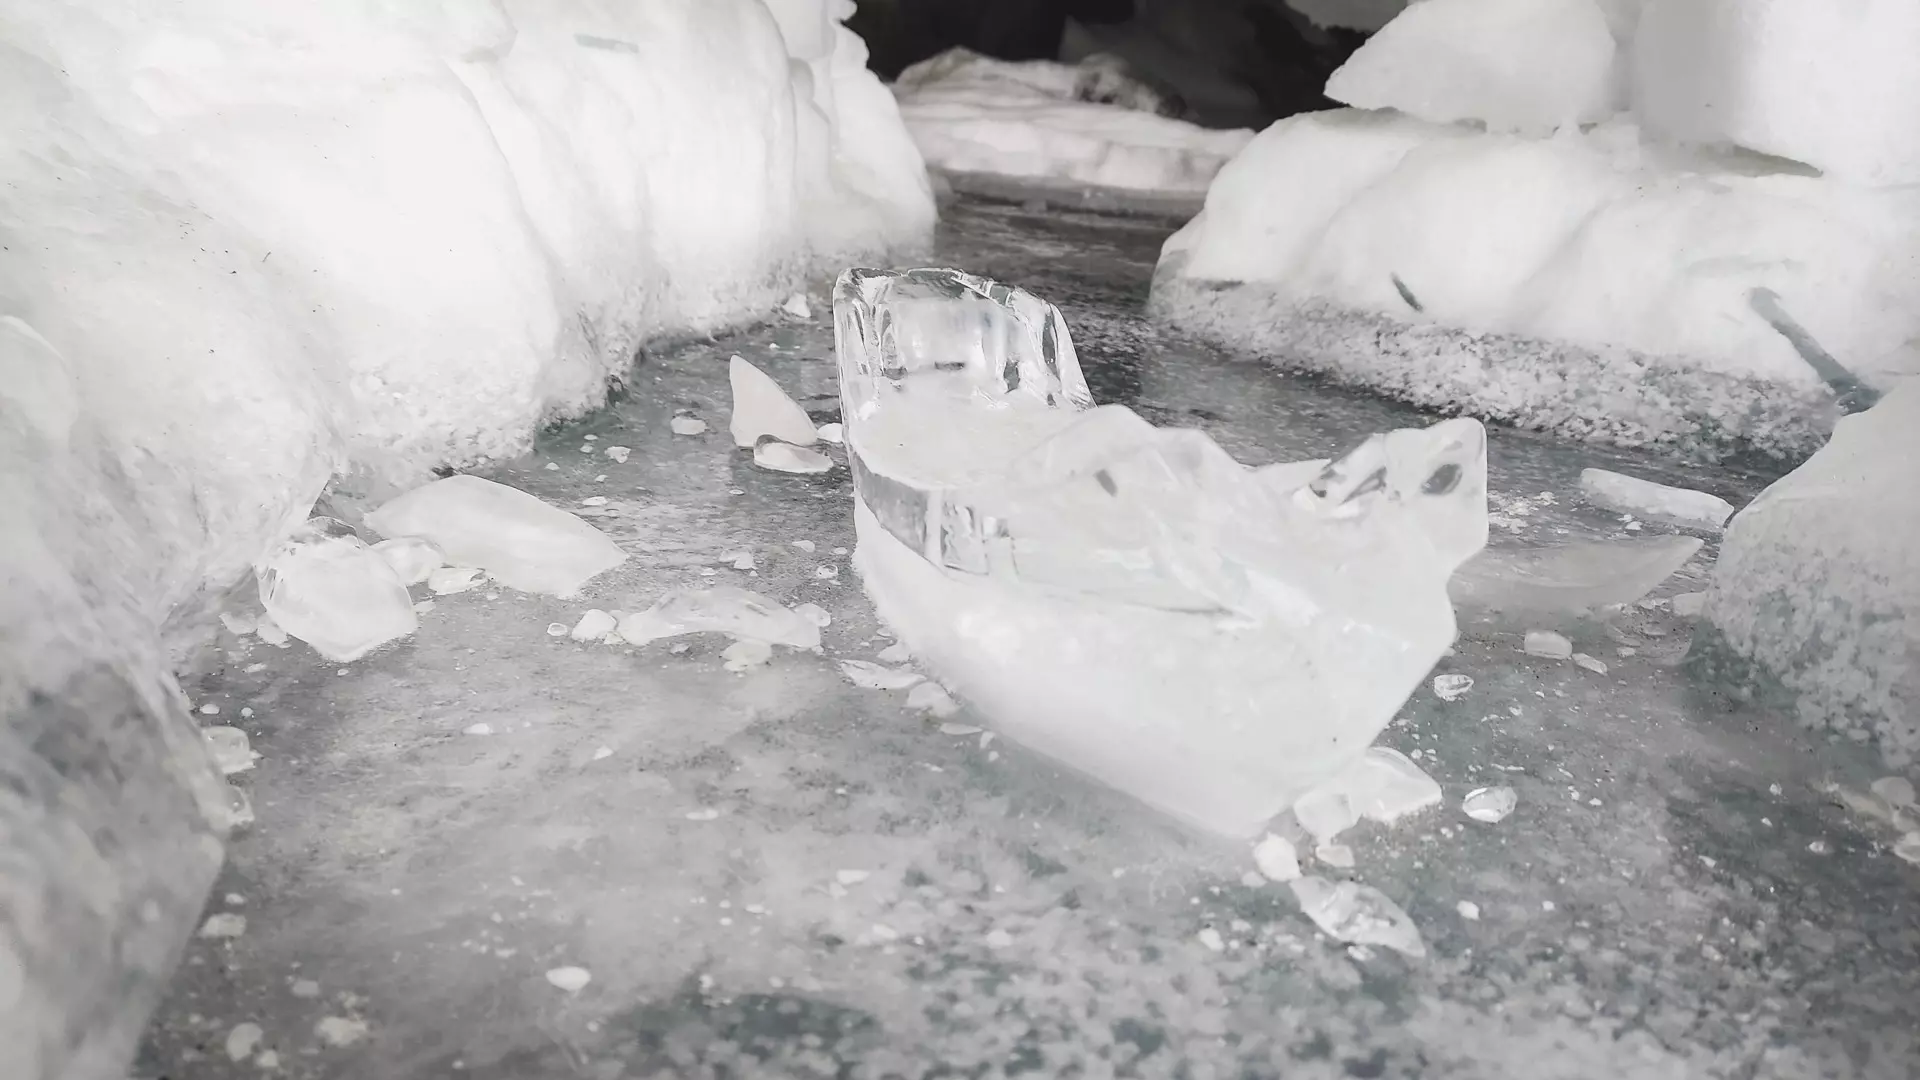 Падение льда на кровлю электростанции совпало со снижением температуры в Озерске